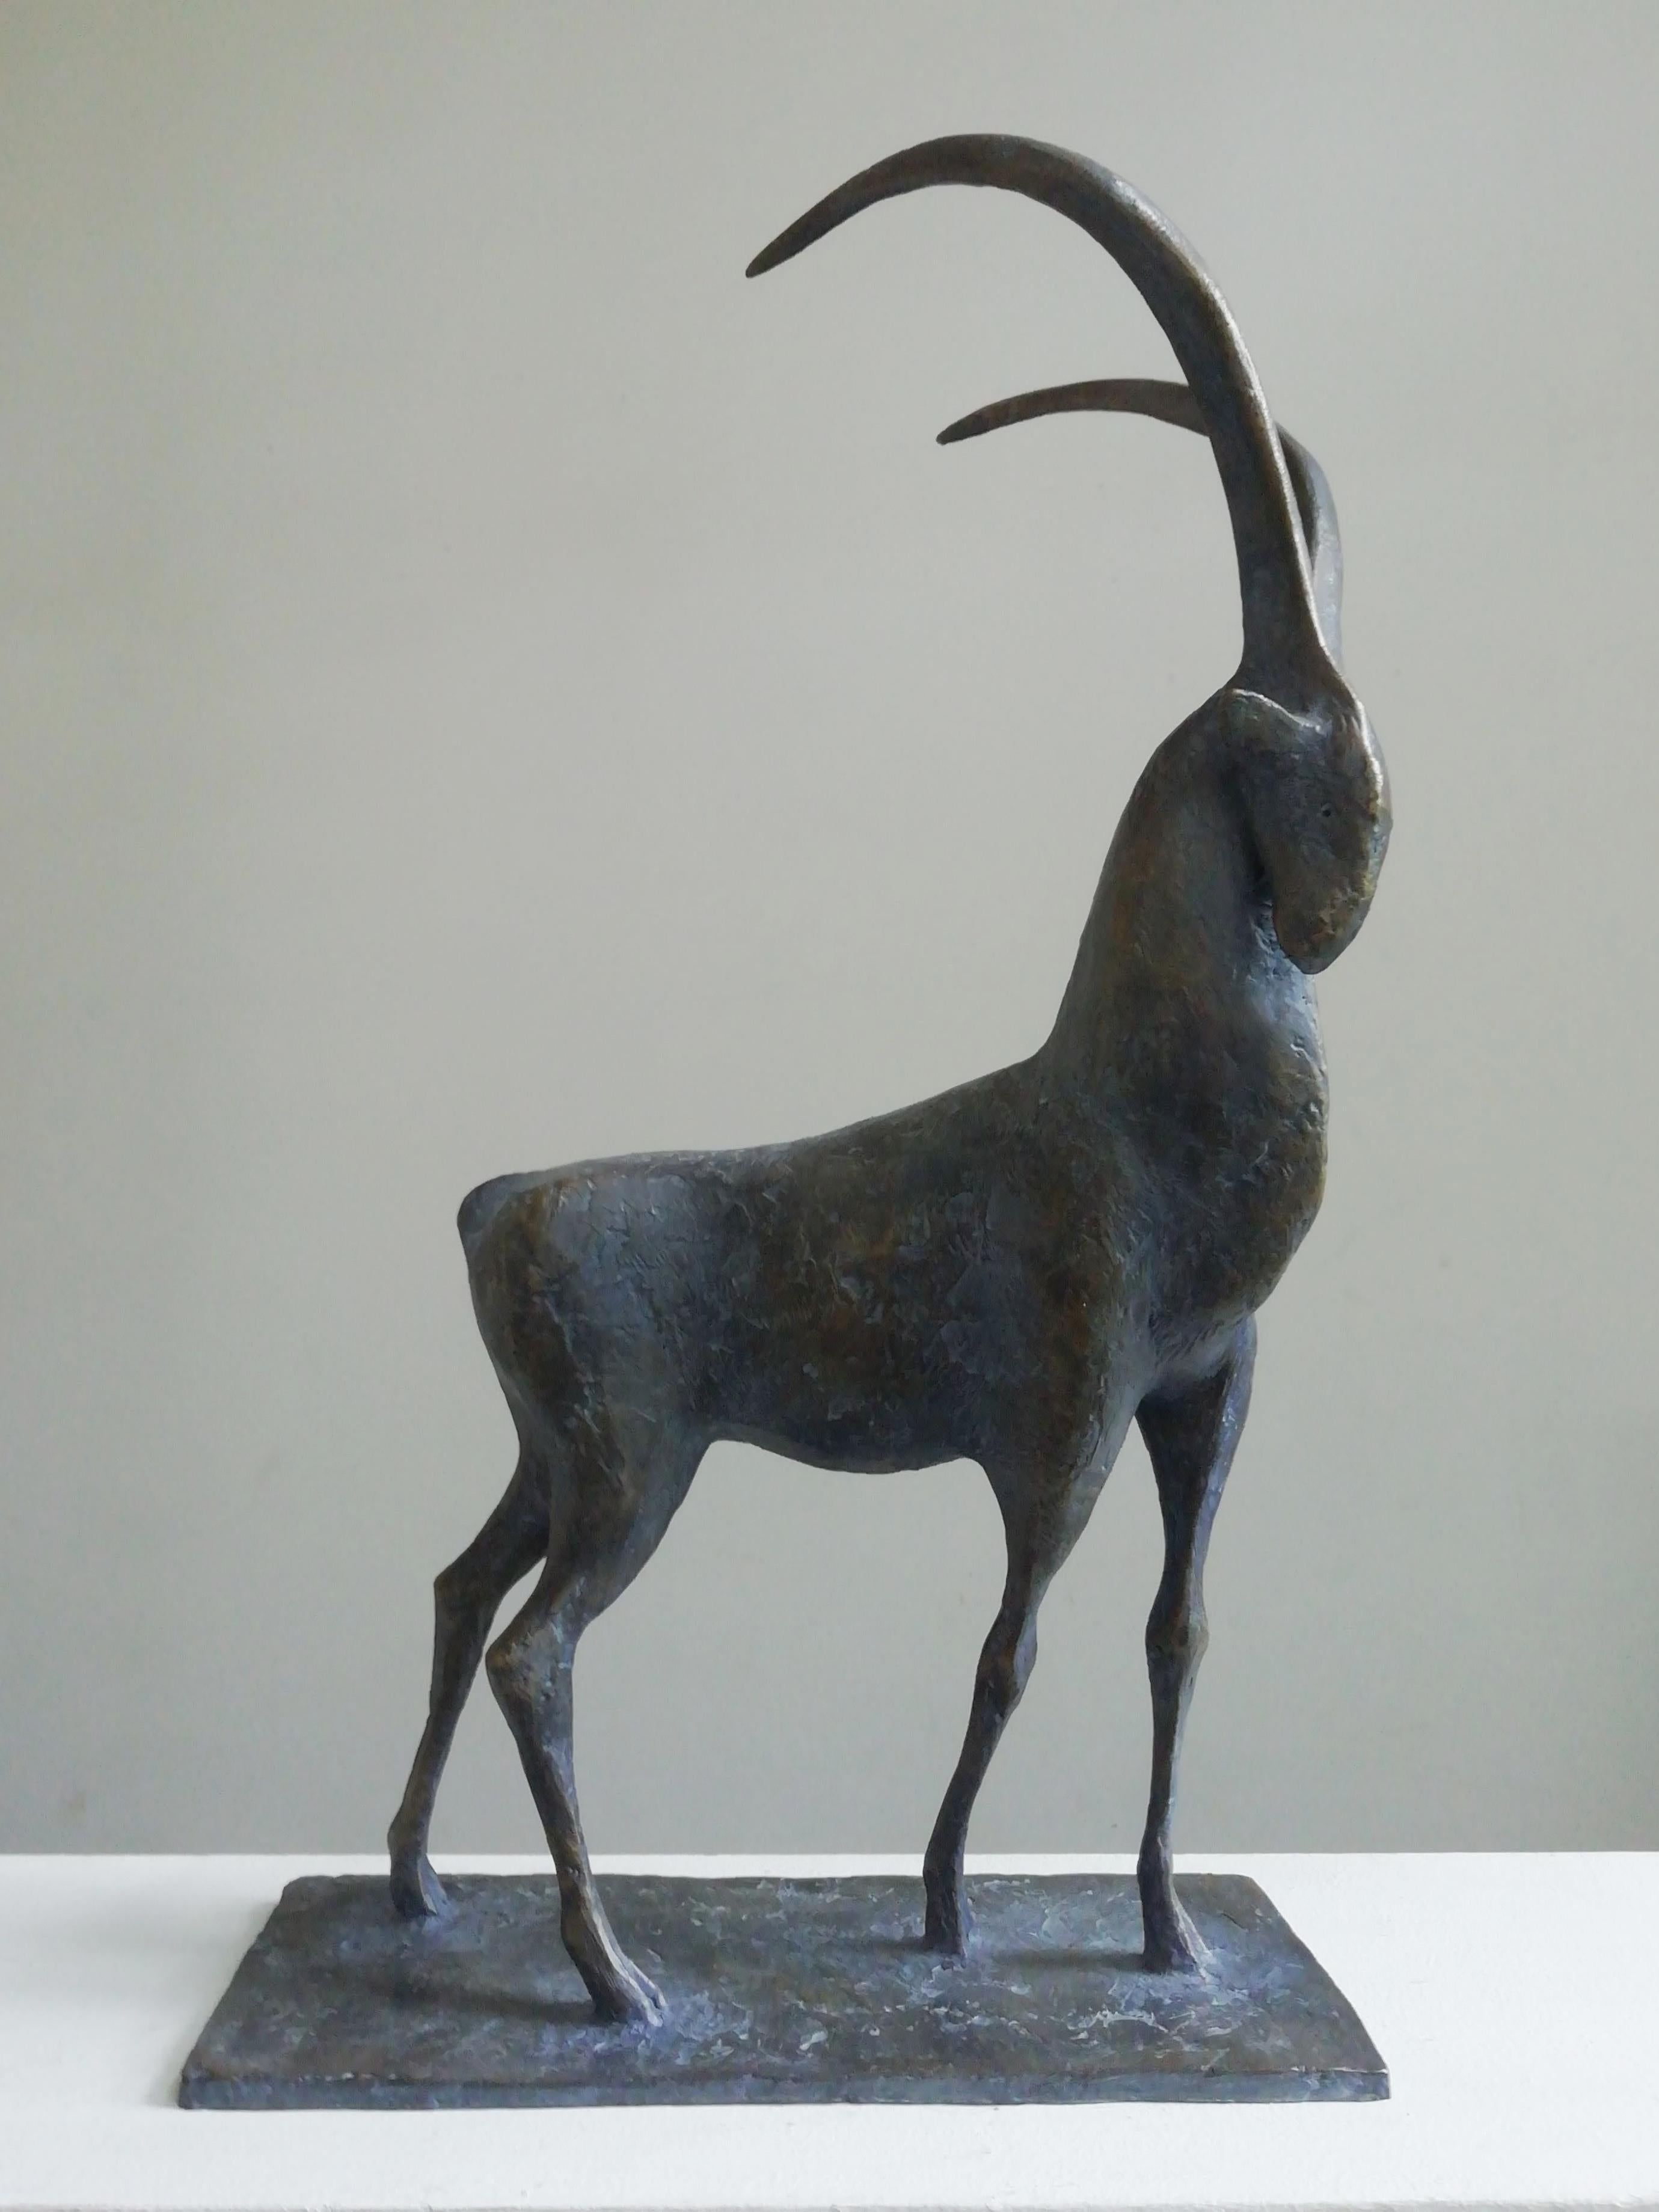 Ibex ist eine Bronzeskulptur des französischen zeitgenössischen Künstlers Pierre Yermia mit den Maßen 62 × 37 × 16 cm (24,4 × 14,6 × 6,3 in). 
Die Skulptur ist signiert und nummeriert, gehört zu einer limitierten Auflage von 8 Exemplaren + 4